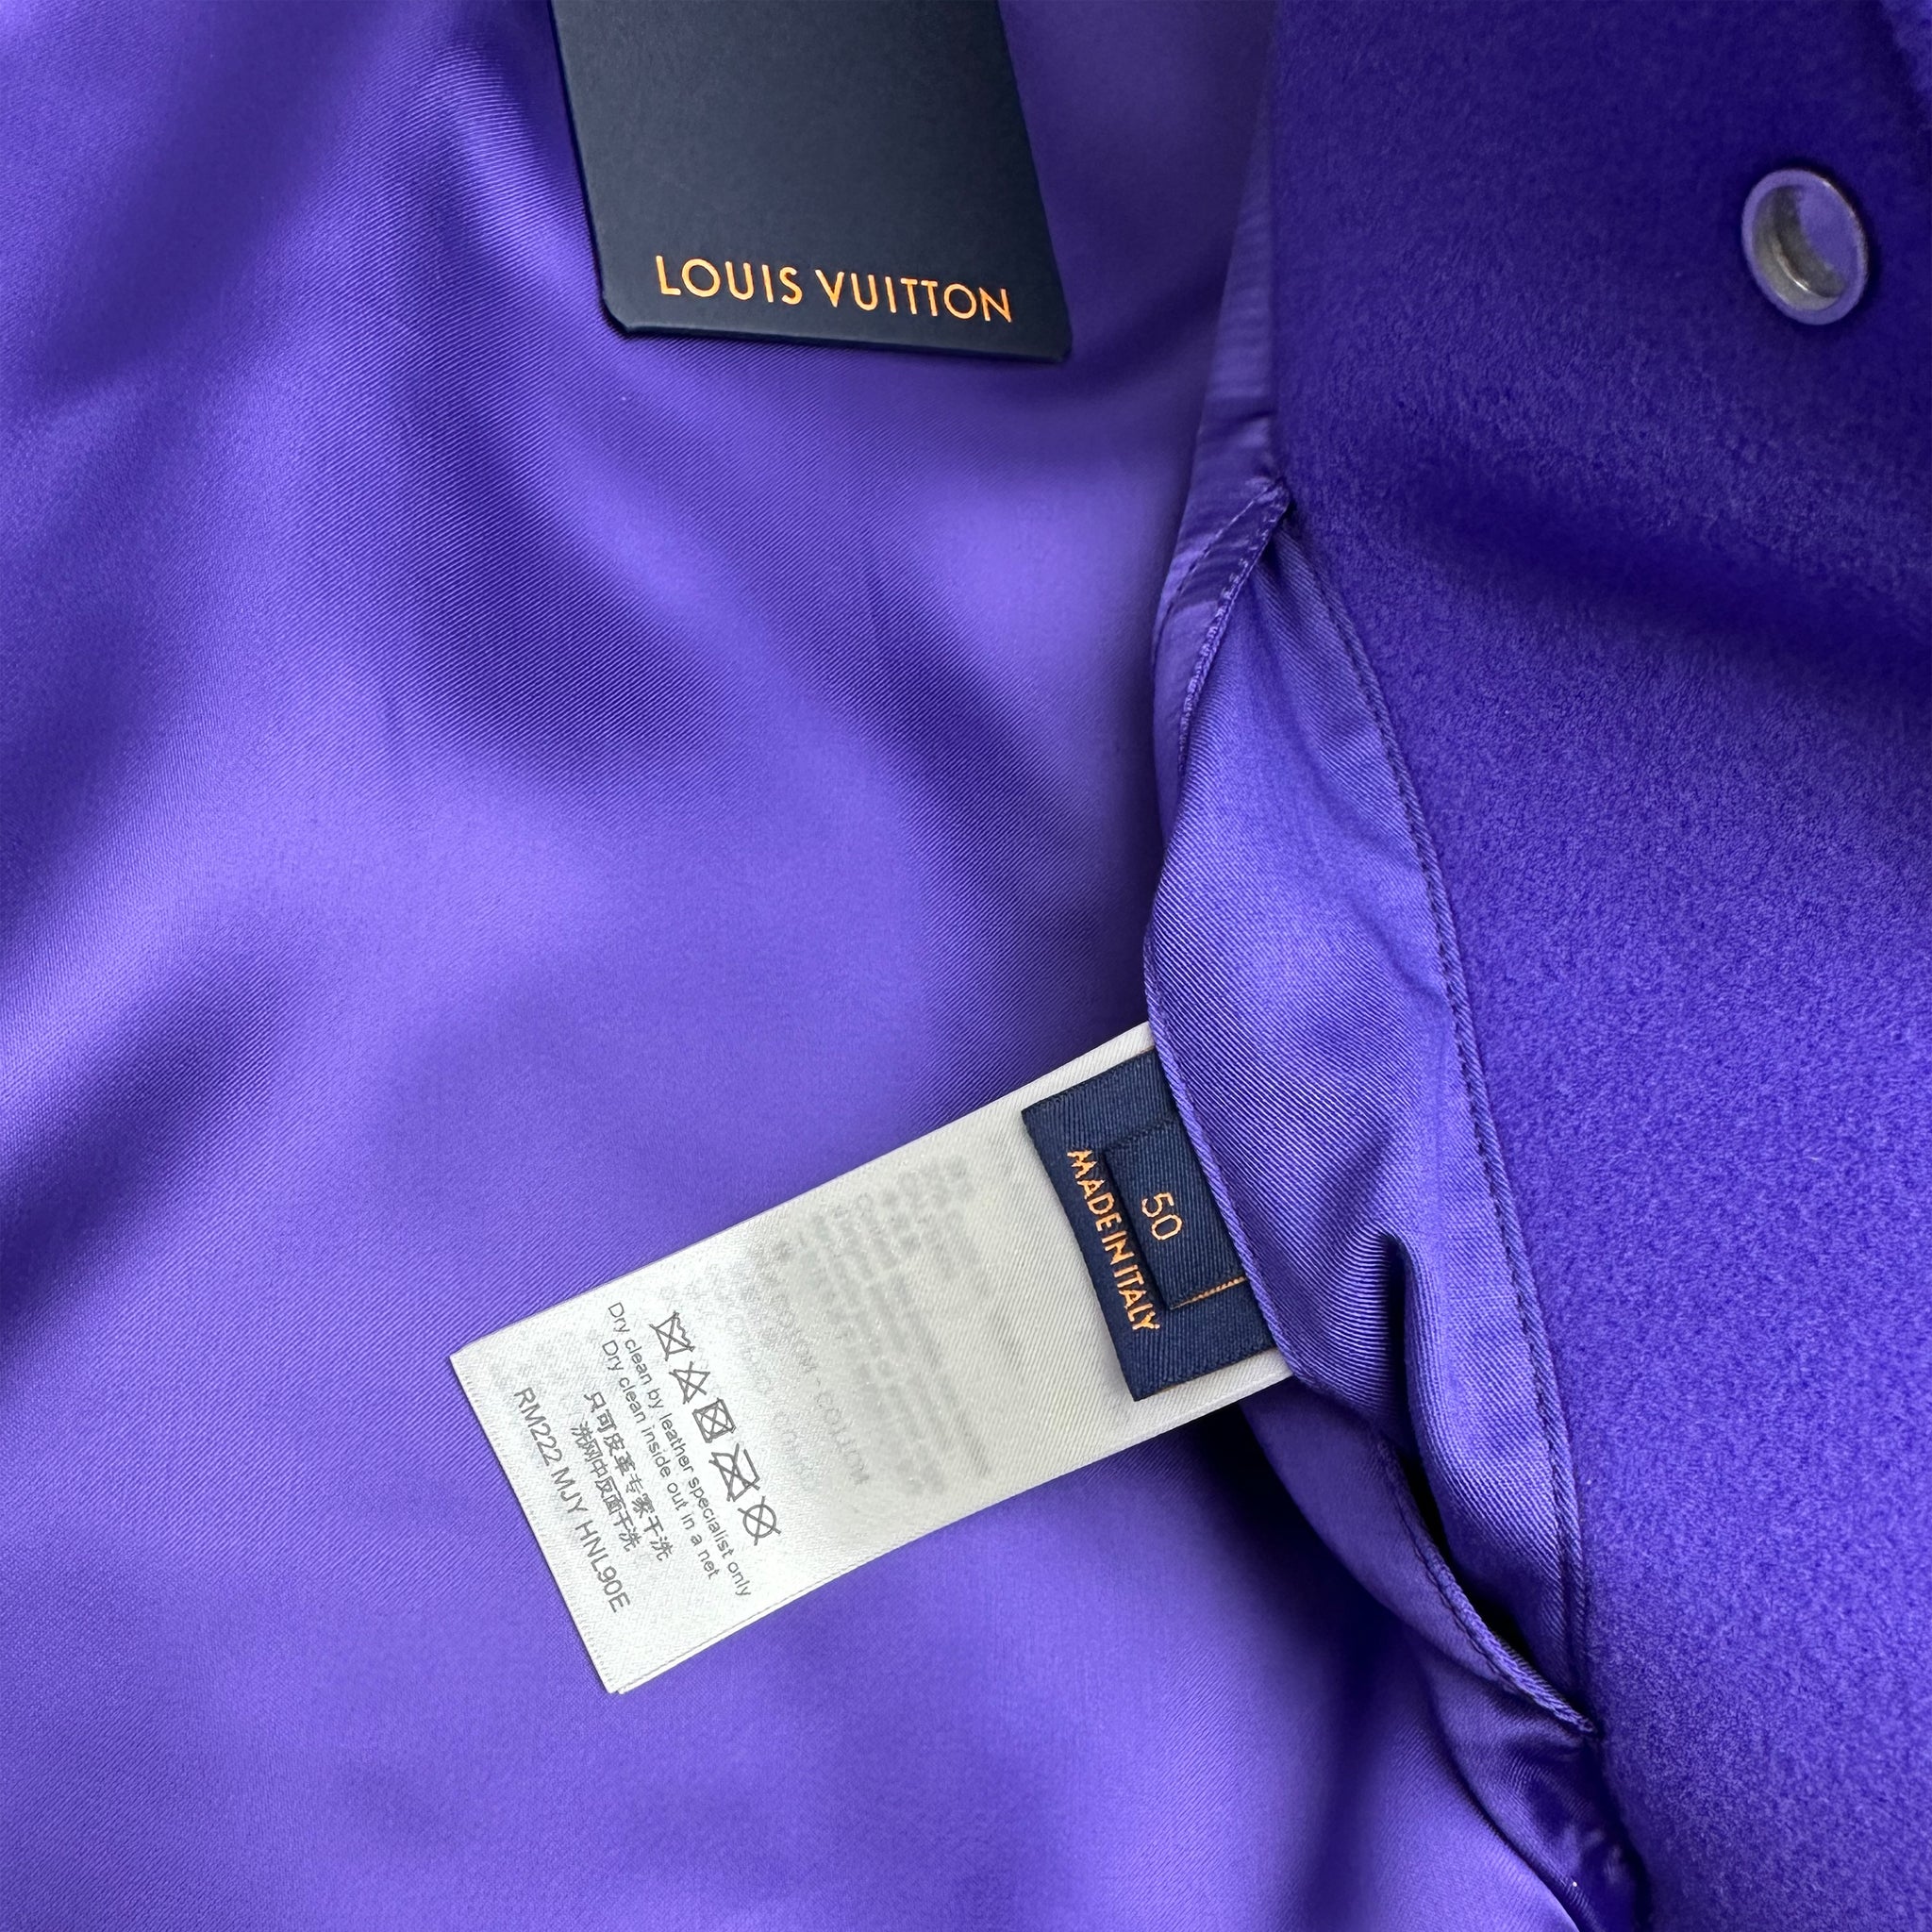 vuitton varsity jacket purple